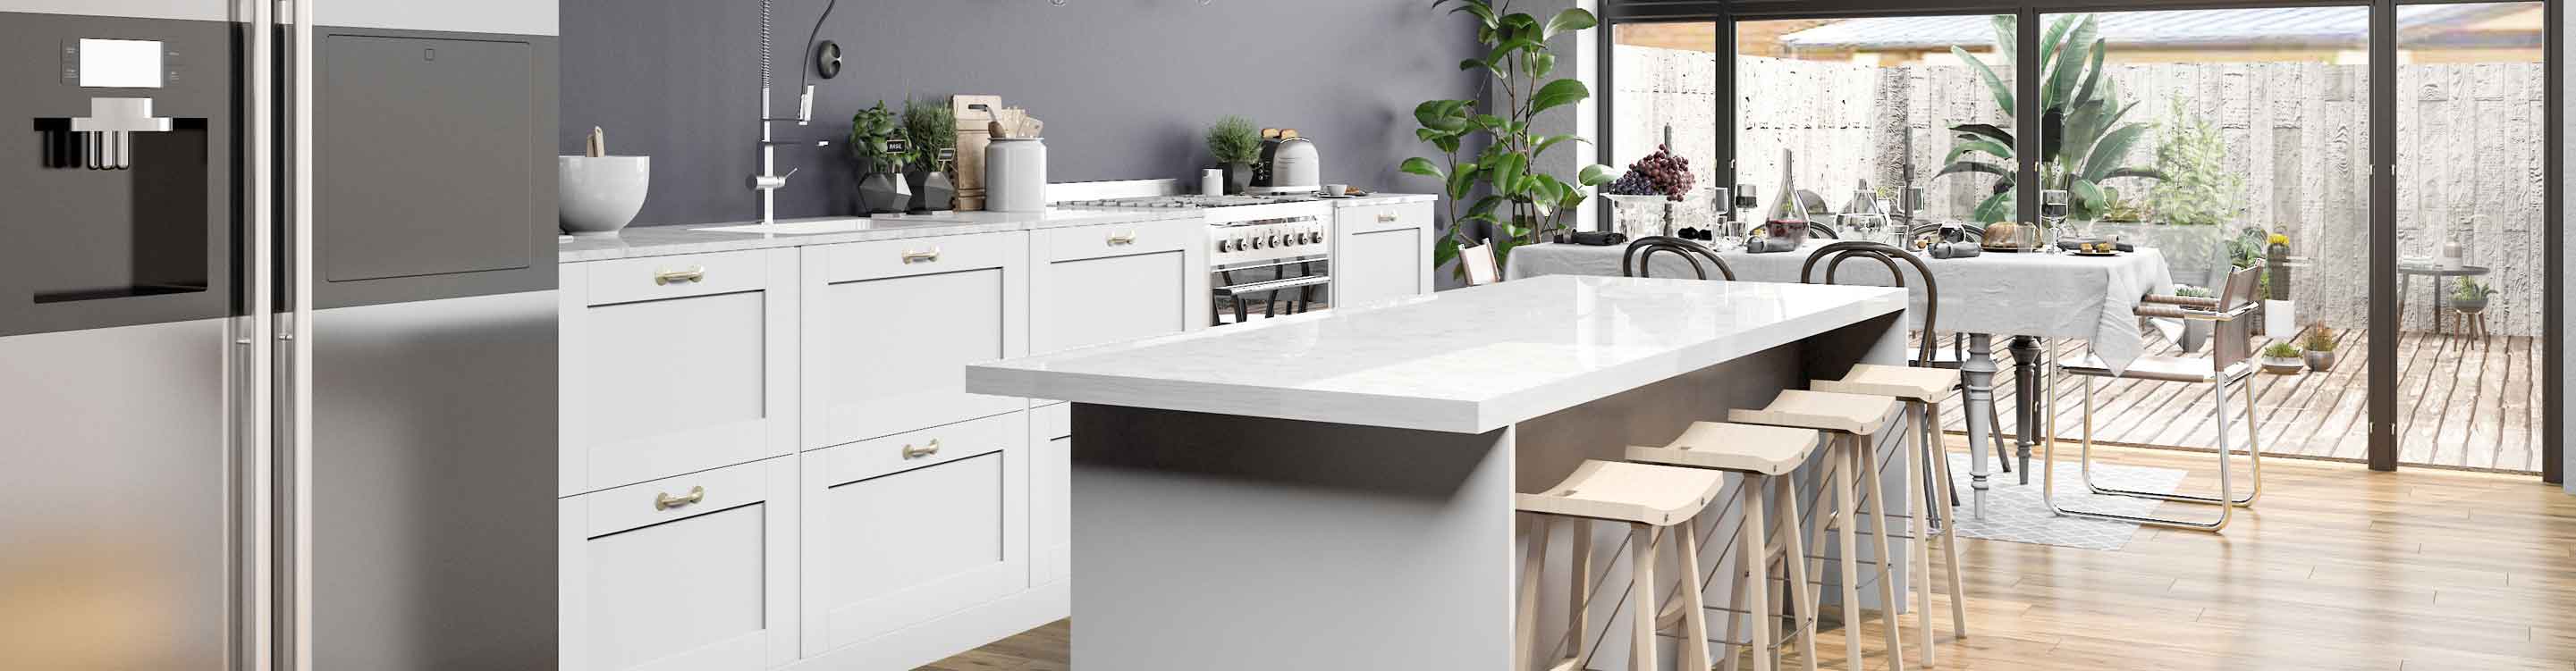 quartz white countertops in white kitchen